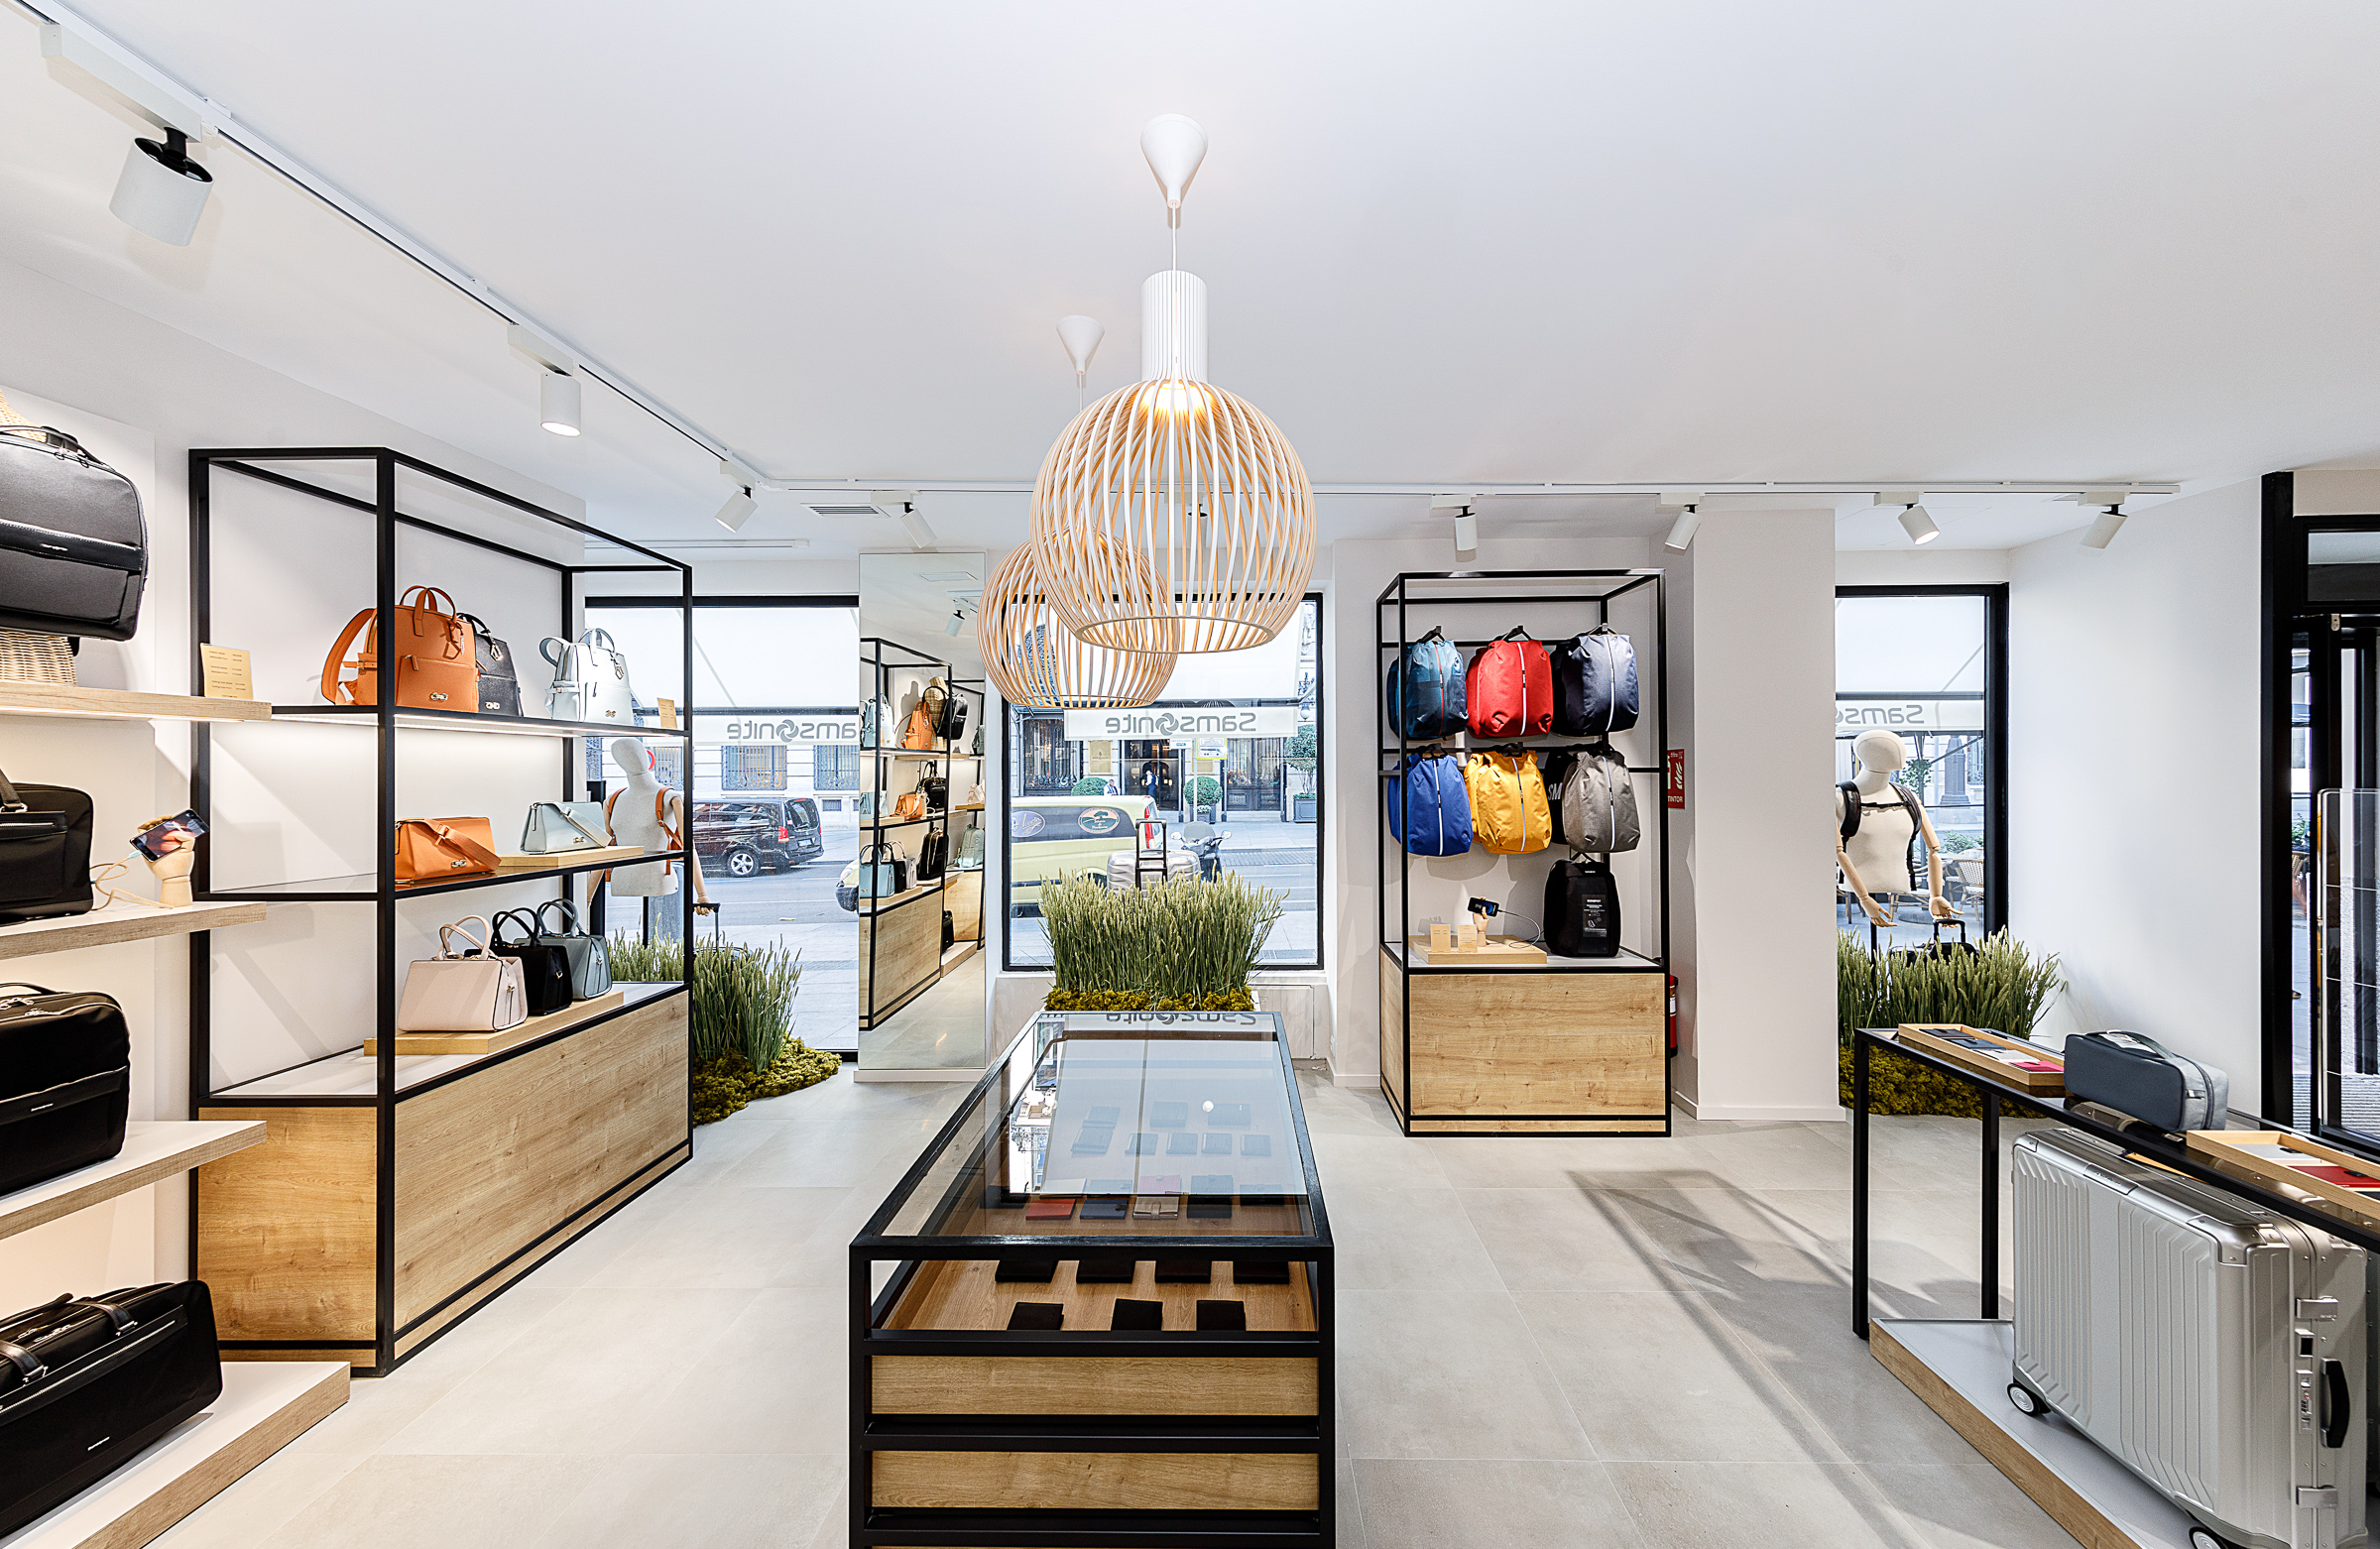 Samsonite abre su flagship store en el centro de Madrid